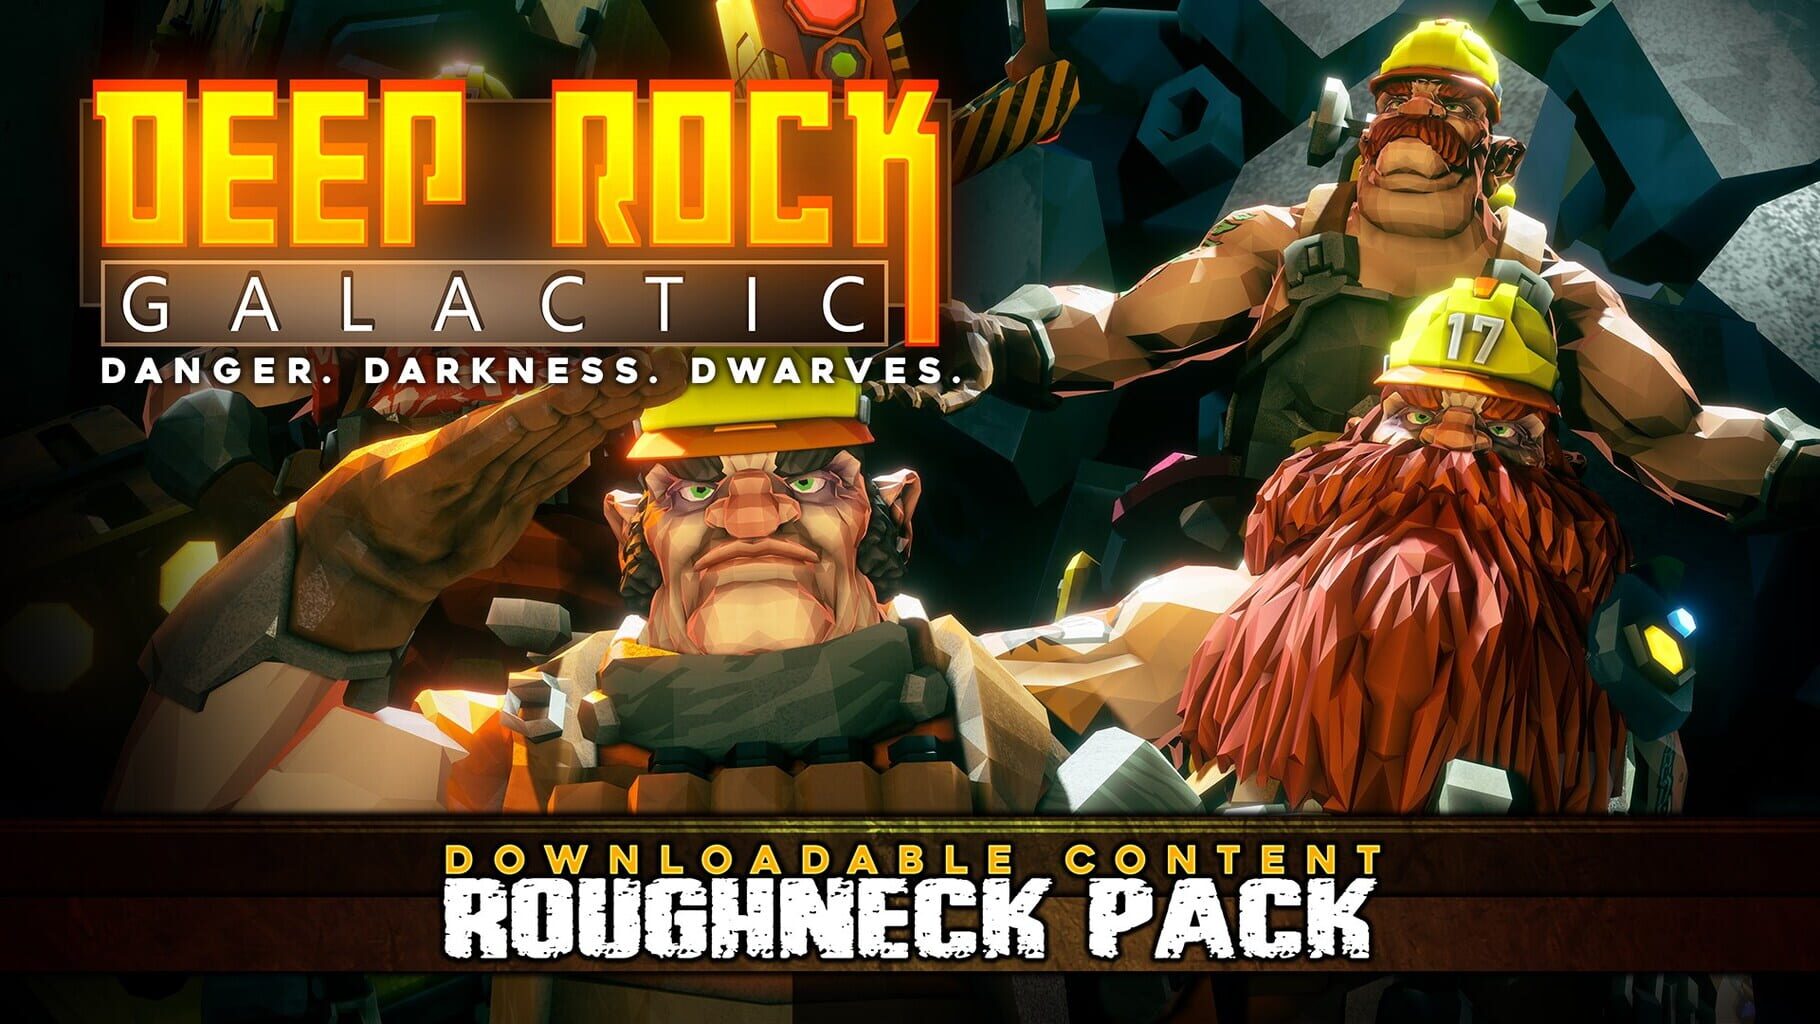 Arte - Deep Rock Galactic: Roughneck Pack